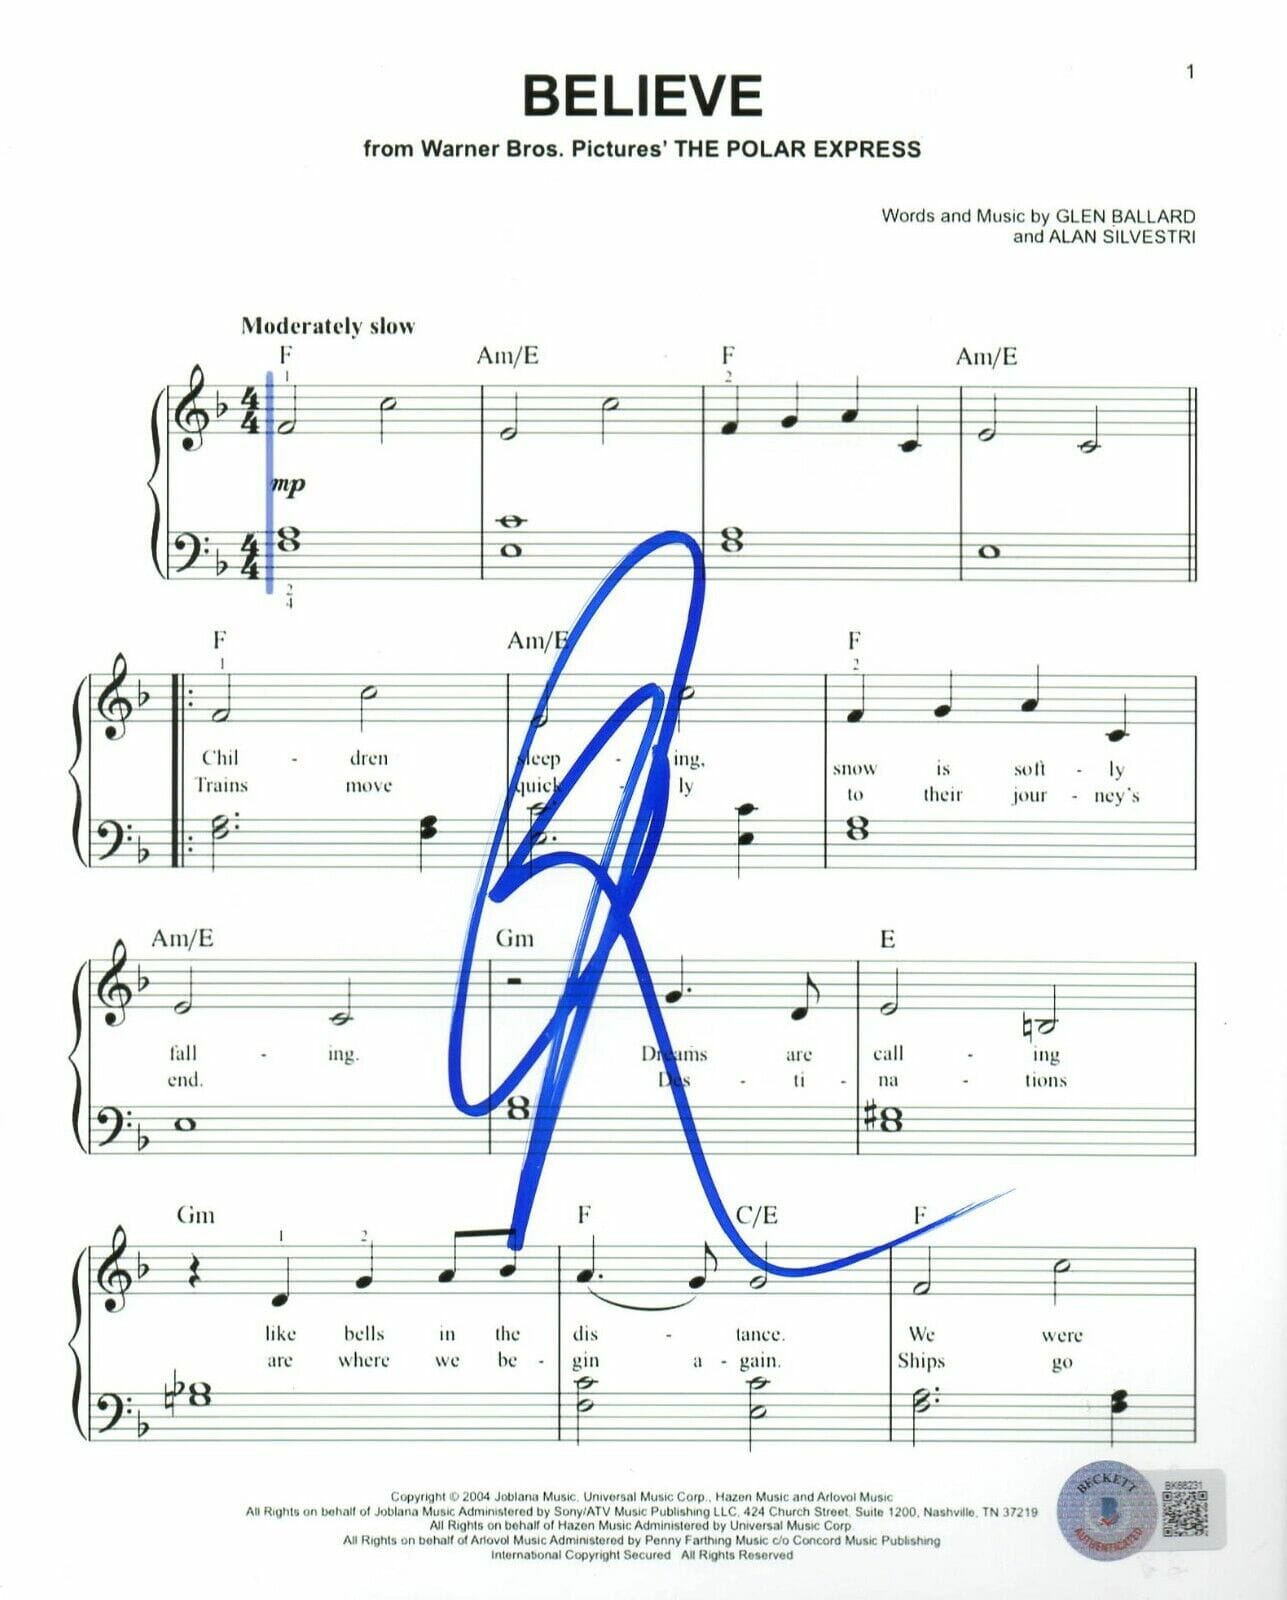 Josh Groban Signed Sheet Music Believe The Polar Express Autograph Beckett Opens In A New Window 